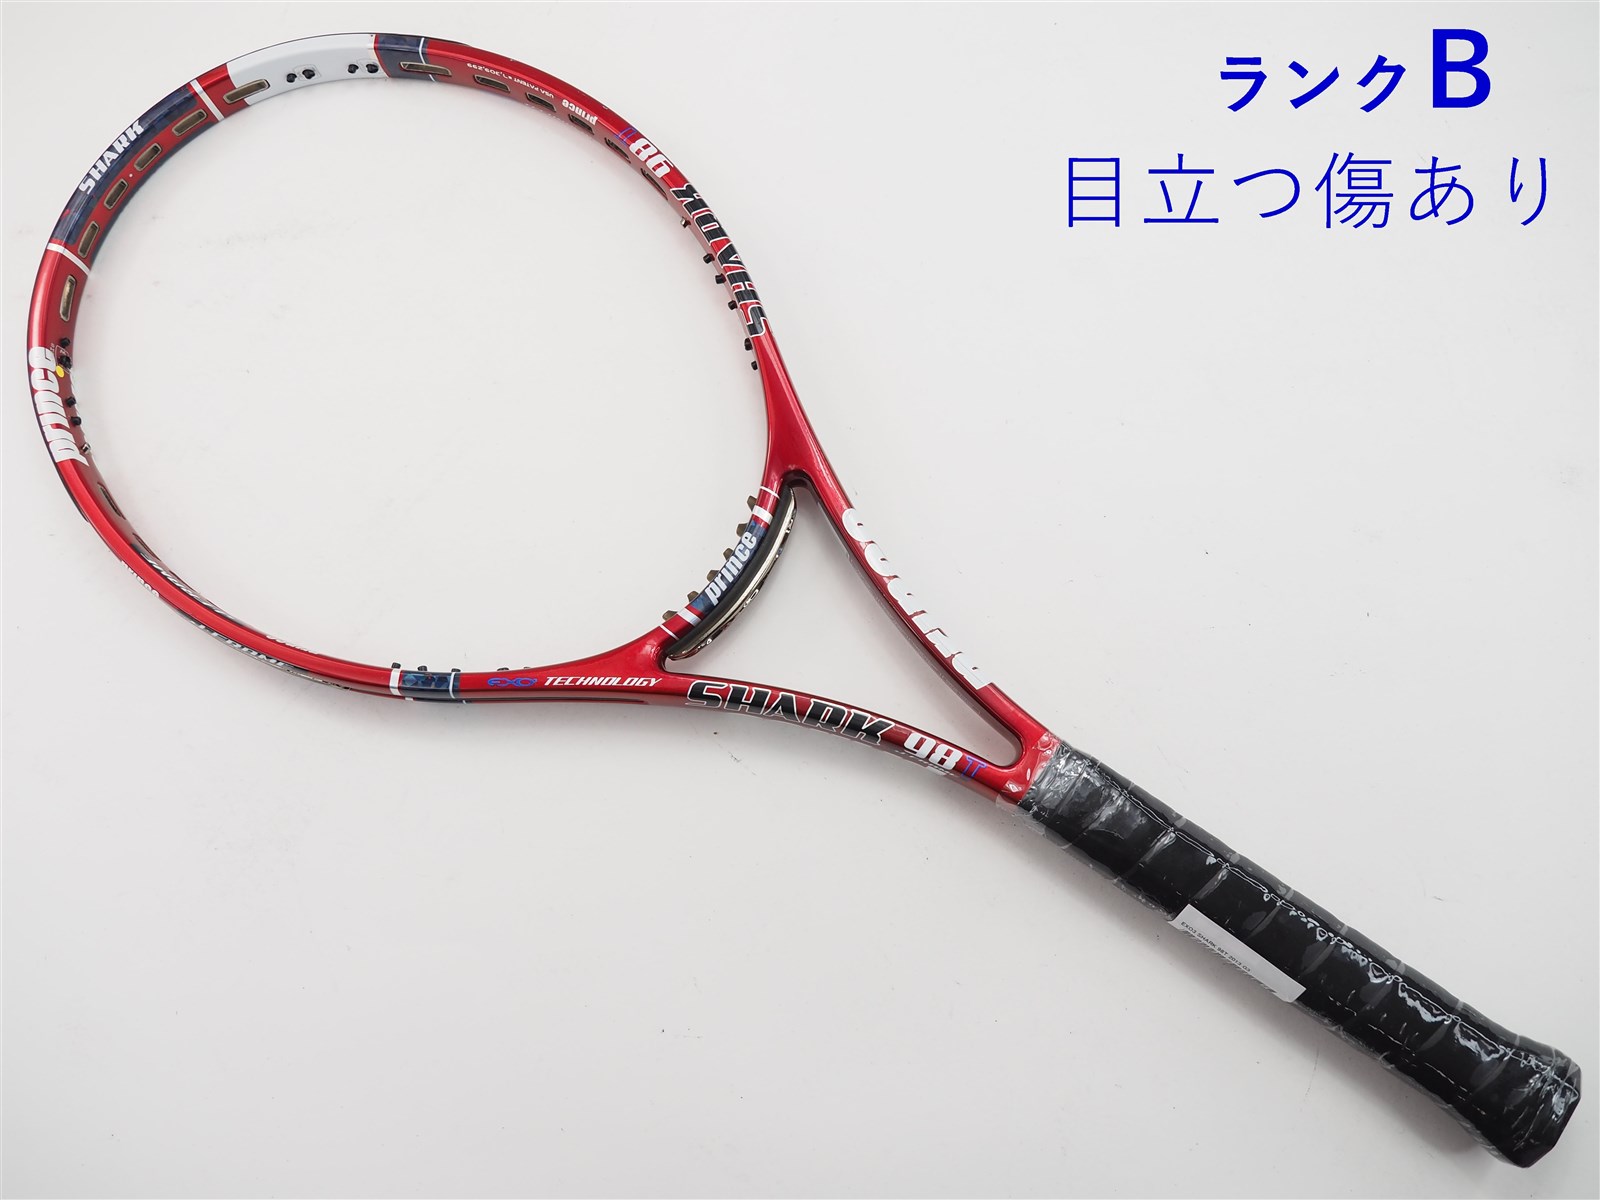 テニスラケット プリンス イーエックスオースリー シャーク 98T 2013年